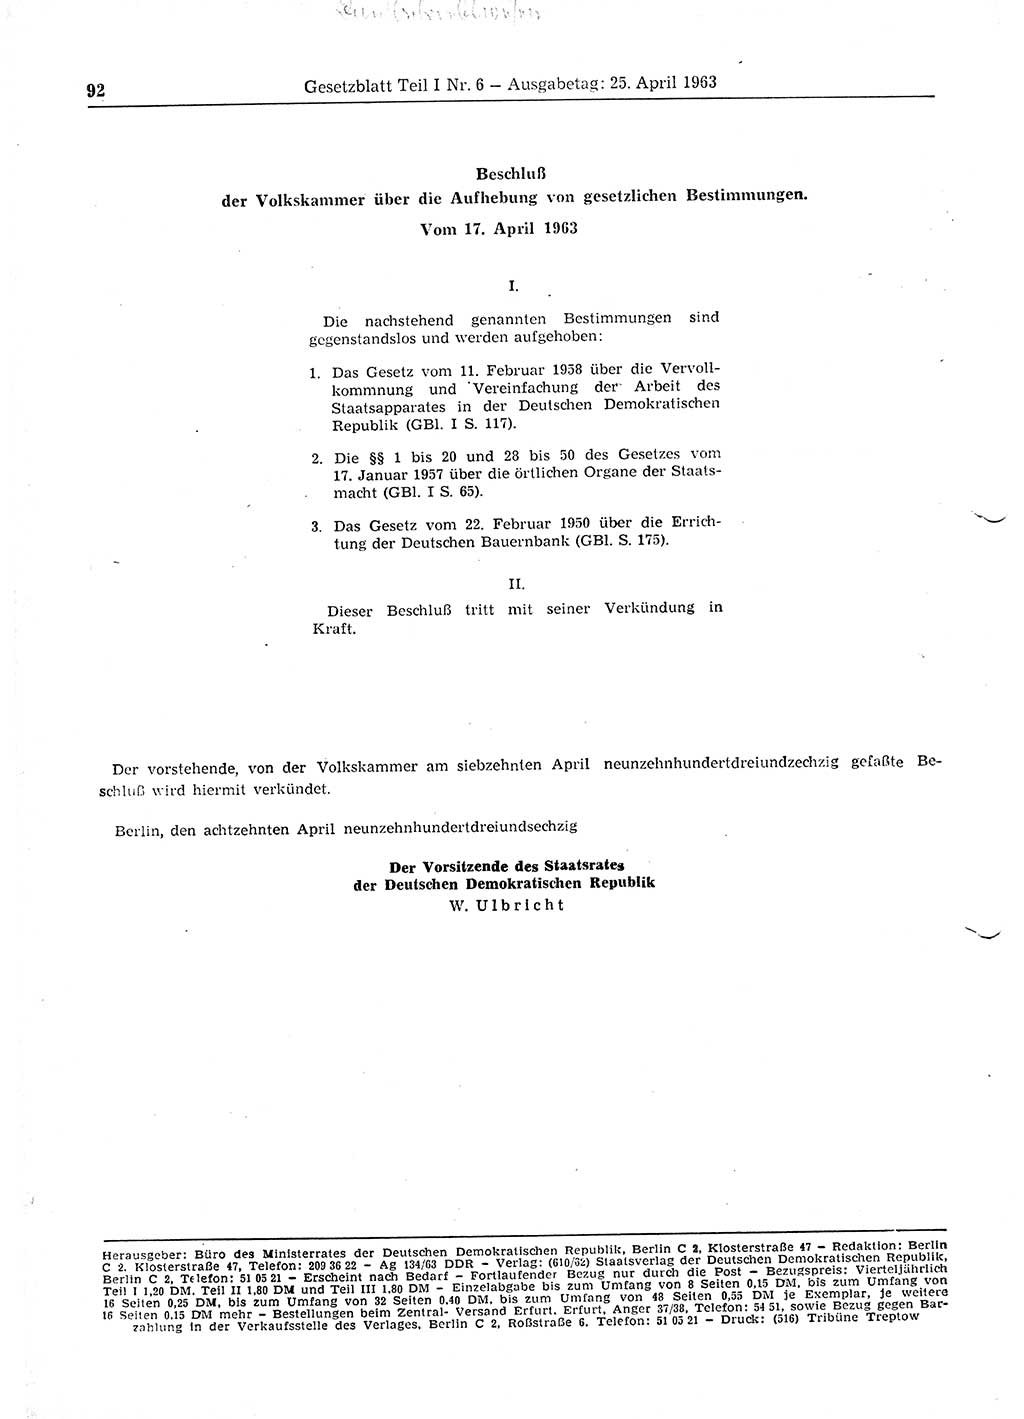 Gesetzblatt (GBl.) der Deutschen Demokratischen Republik (DDR) Teil Ⅰ 1963, Seite 92 (GBl. DDR Ⅰ 1963, S. 92)